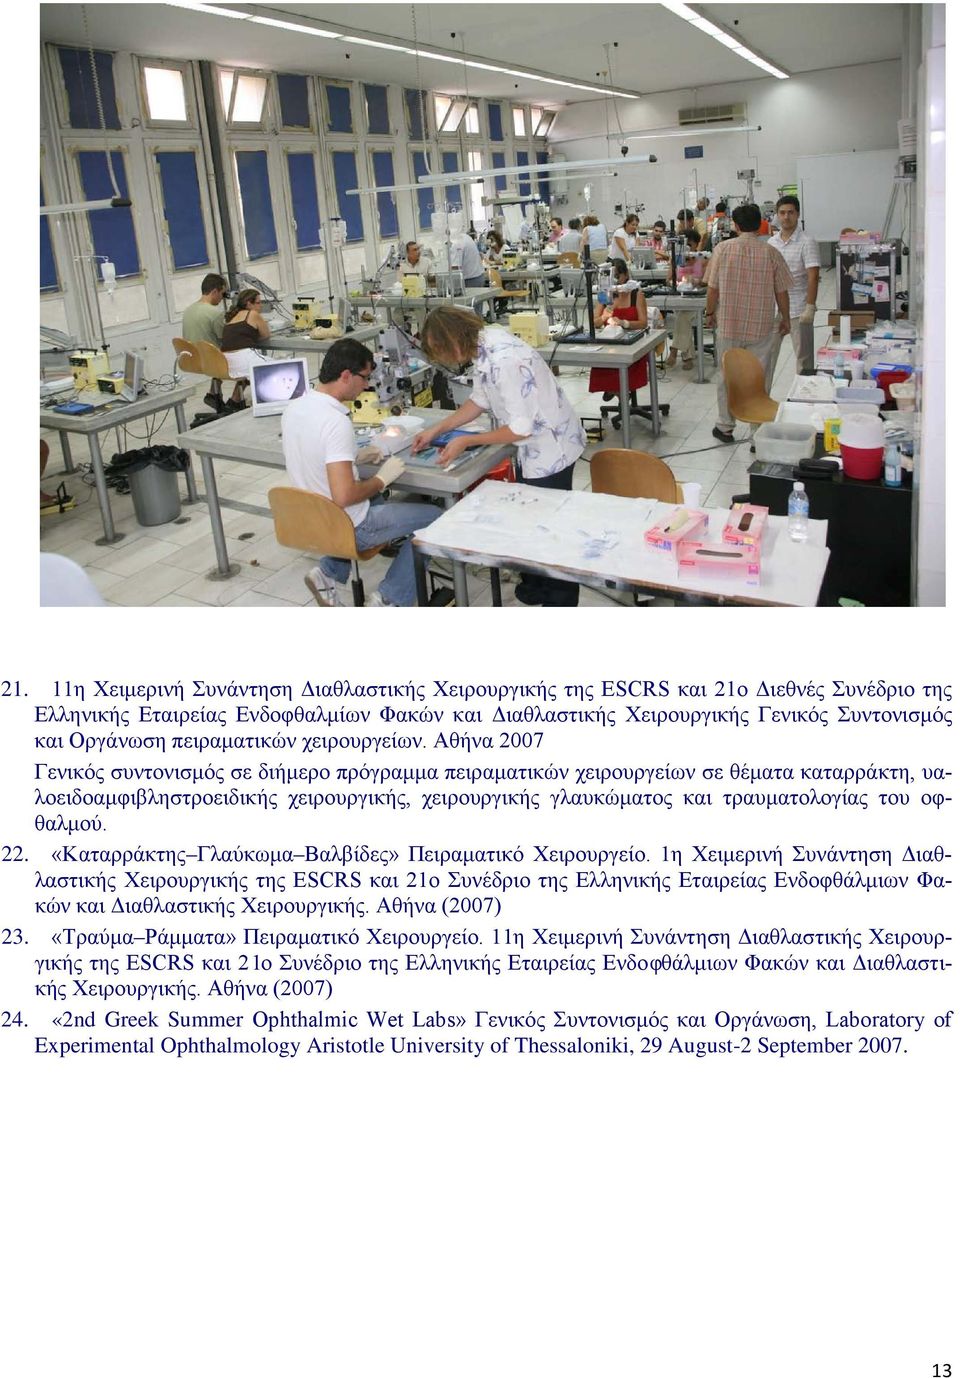 Αθήνα 2007 Γενικός συντονισμός σε διήμερο πρόγραμμα πειραματικών χειρουργείων σε θέματα καταρράκτη, υαλοειδοαμφιβληστροειδικής χειρουργικής, χειρουργικής γλαυκώματος και τραυματολογίας του οφθαλμού.